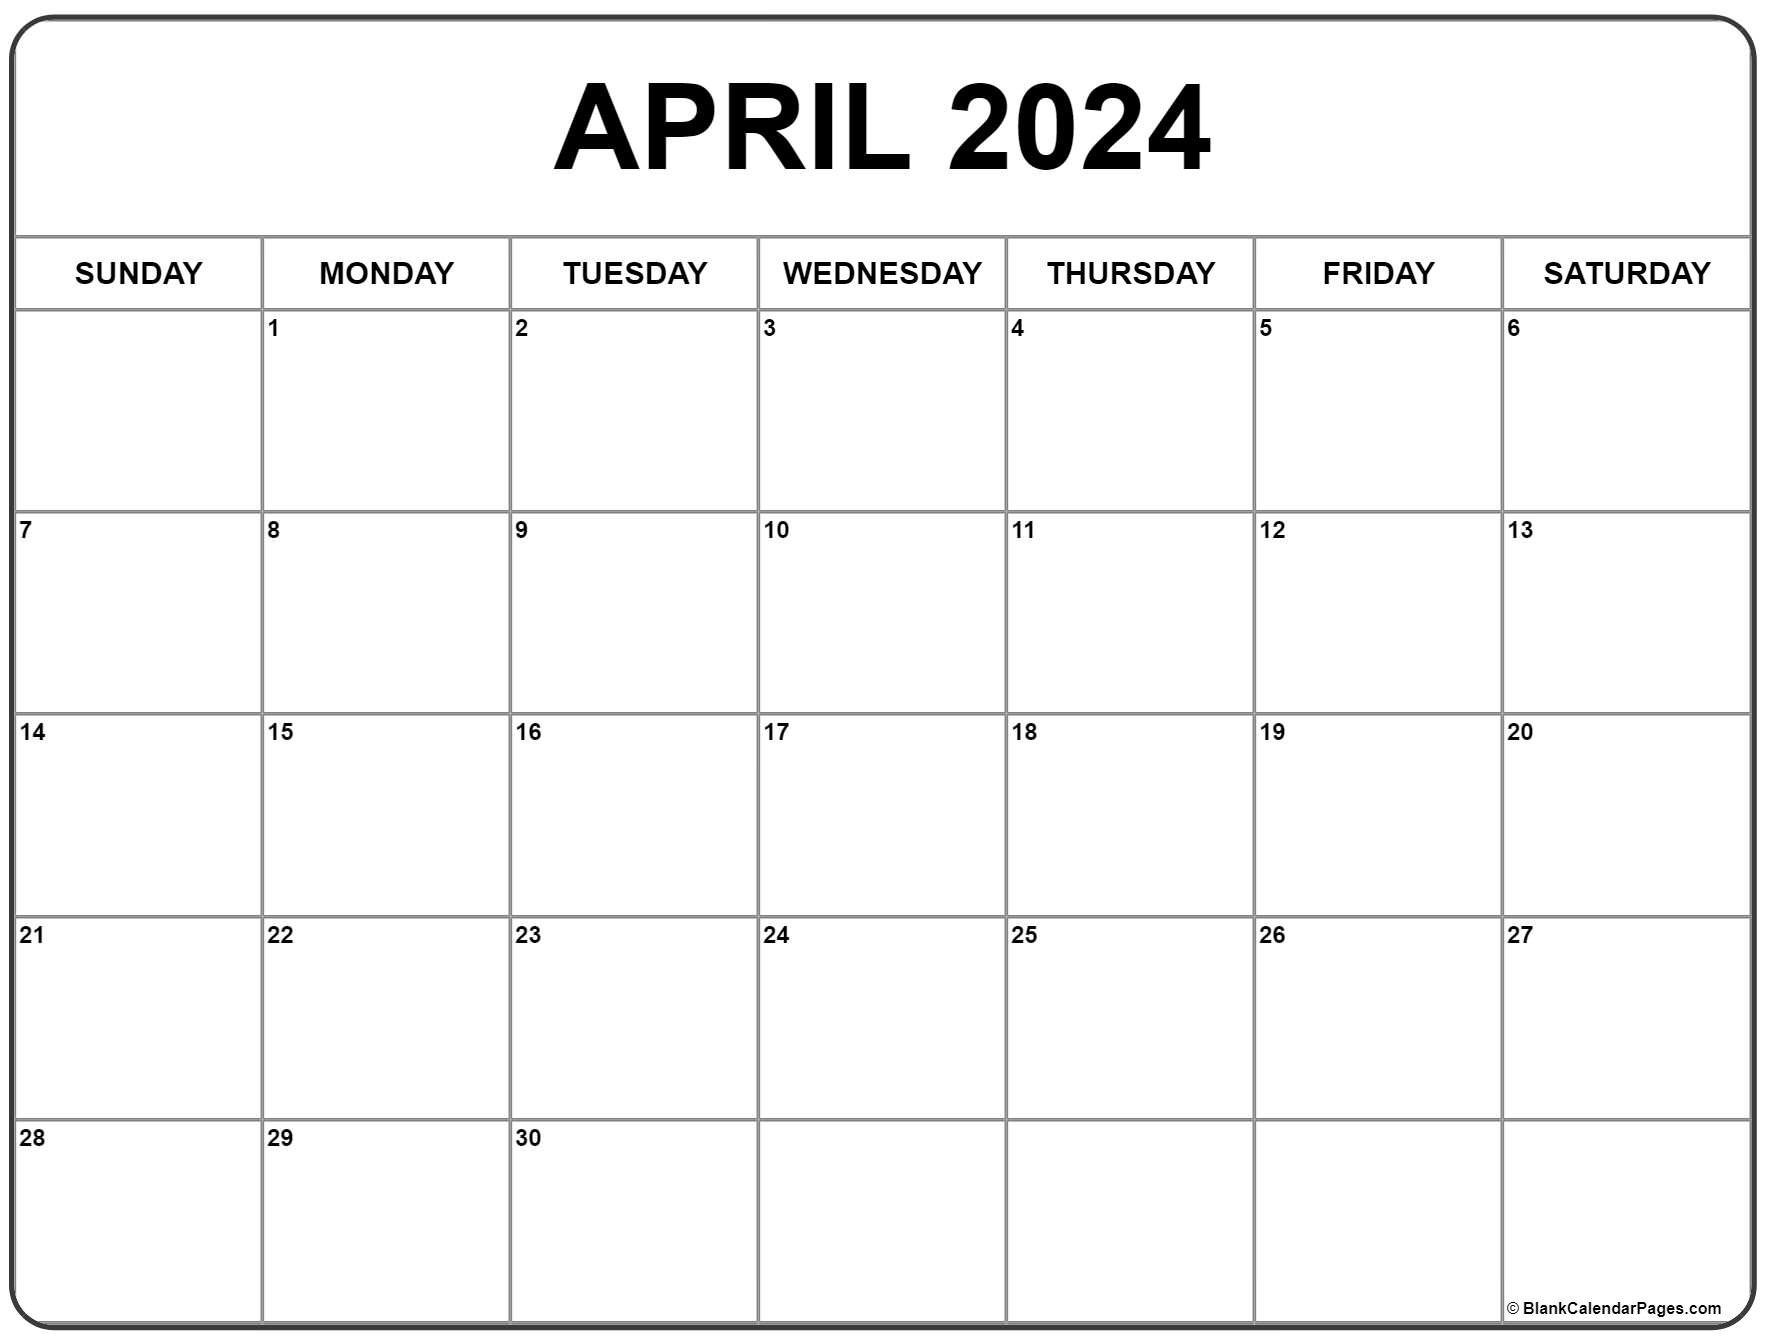 April 2024 Calendar | Free Printable Calendar for April 2024 Calendar Printable Free